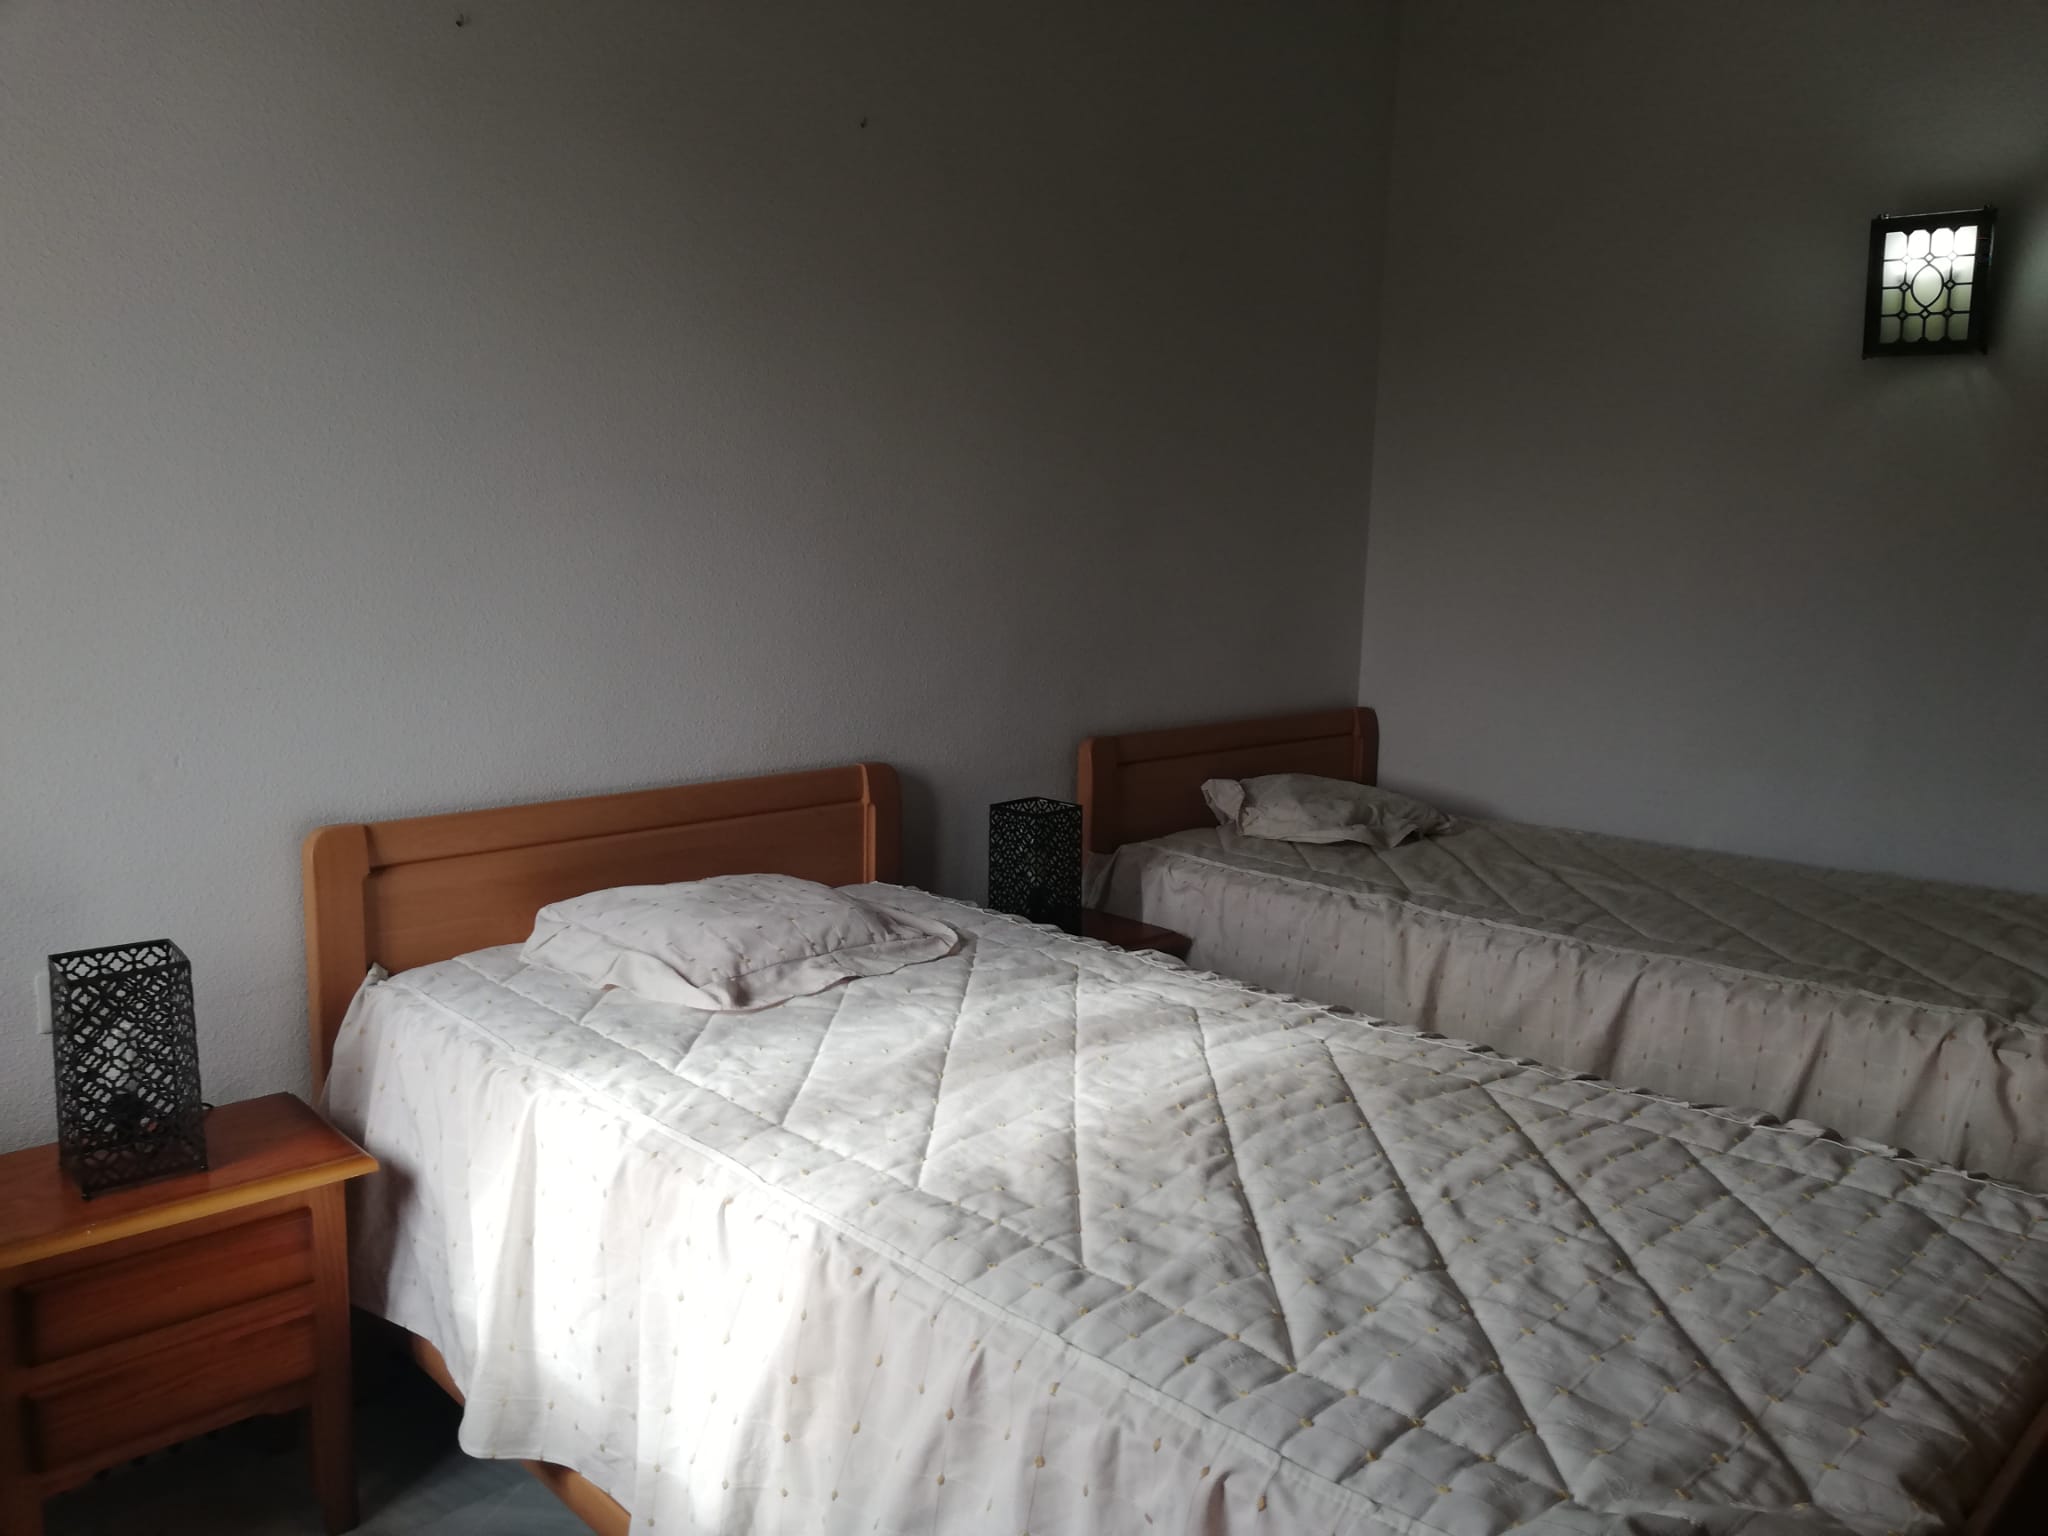 Apartamento de 1 dormitorio en alquiler en Estepona primera línea de mar - mibgroup.es